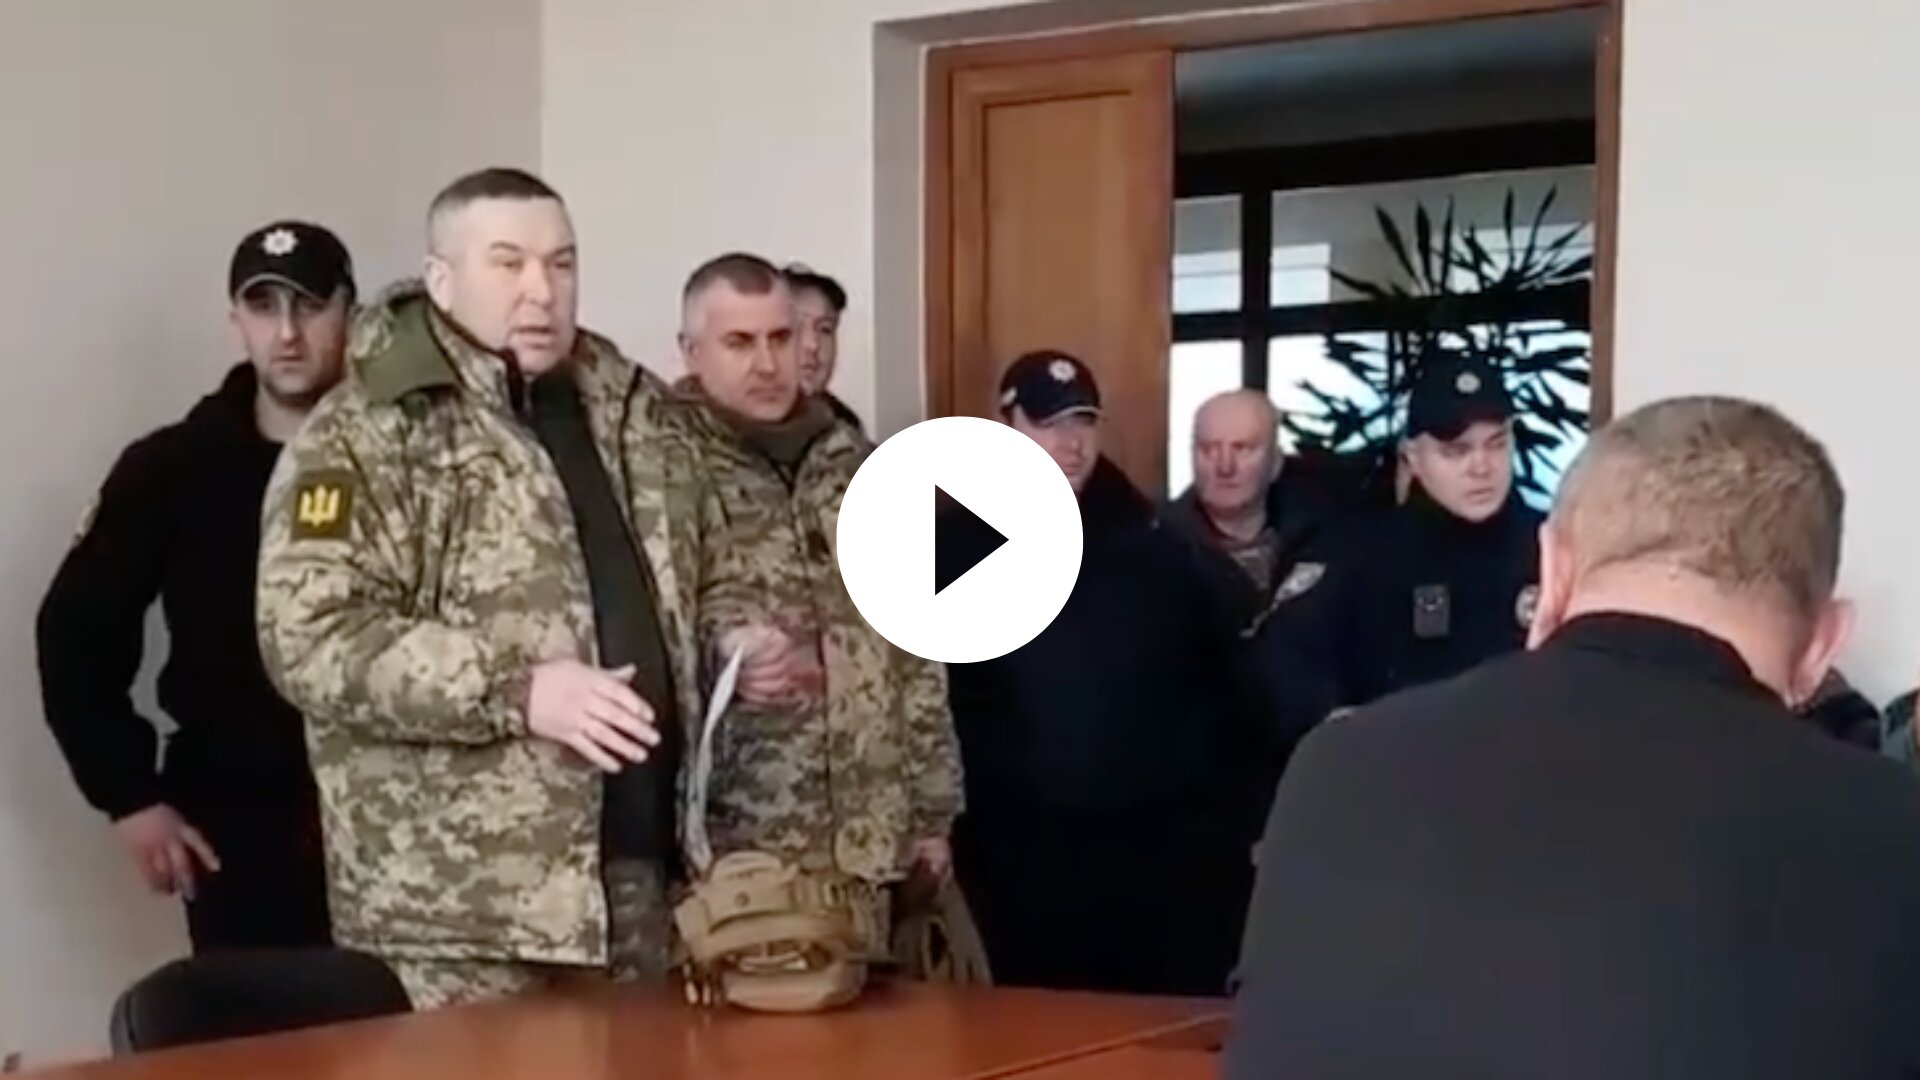 Метою візиту військовослужбовців територіального центру комплектування було вручення повісток представникам депутатського корпусу.

